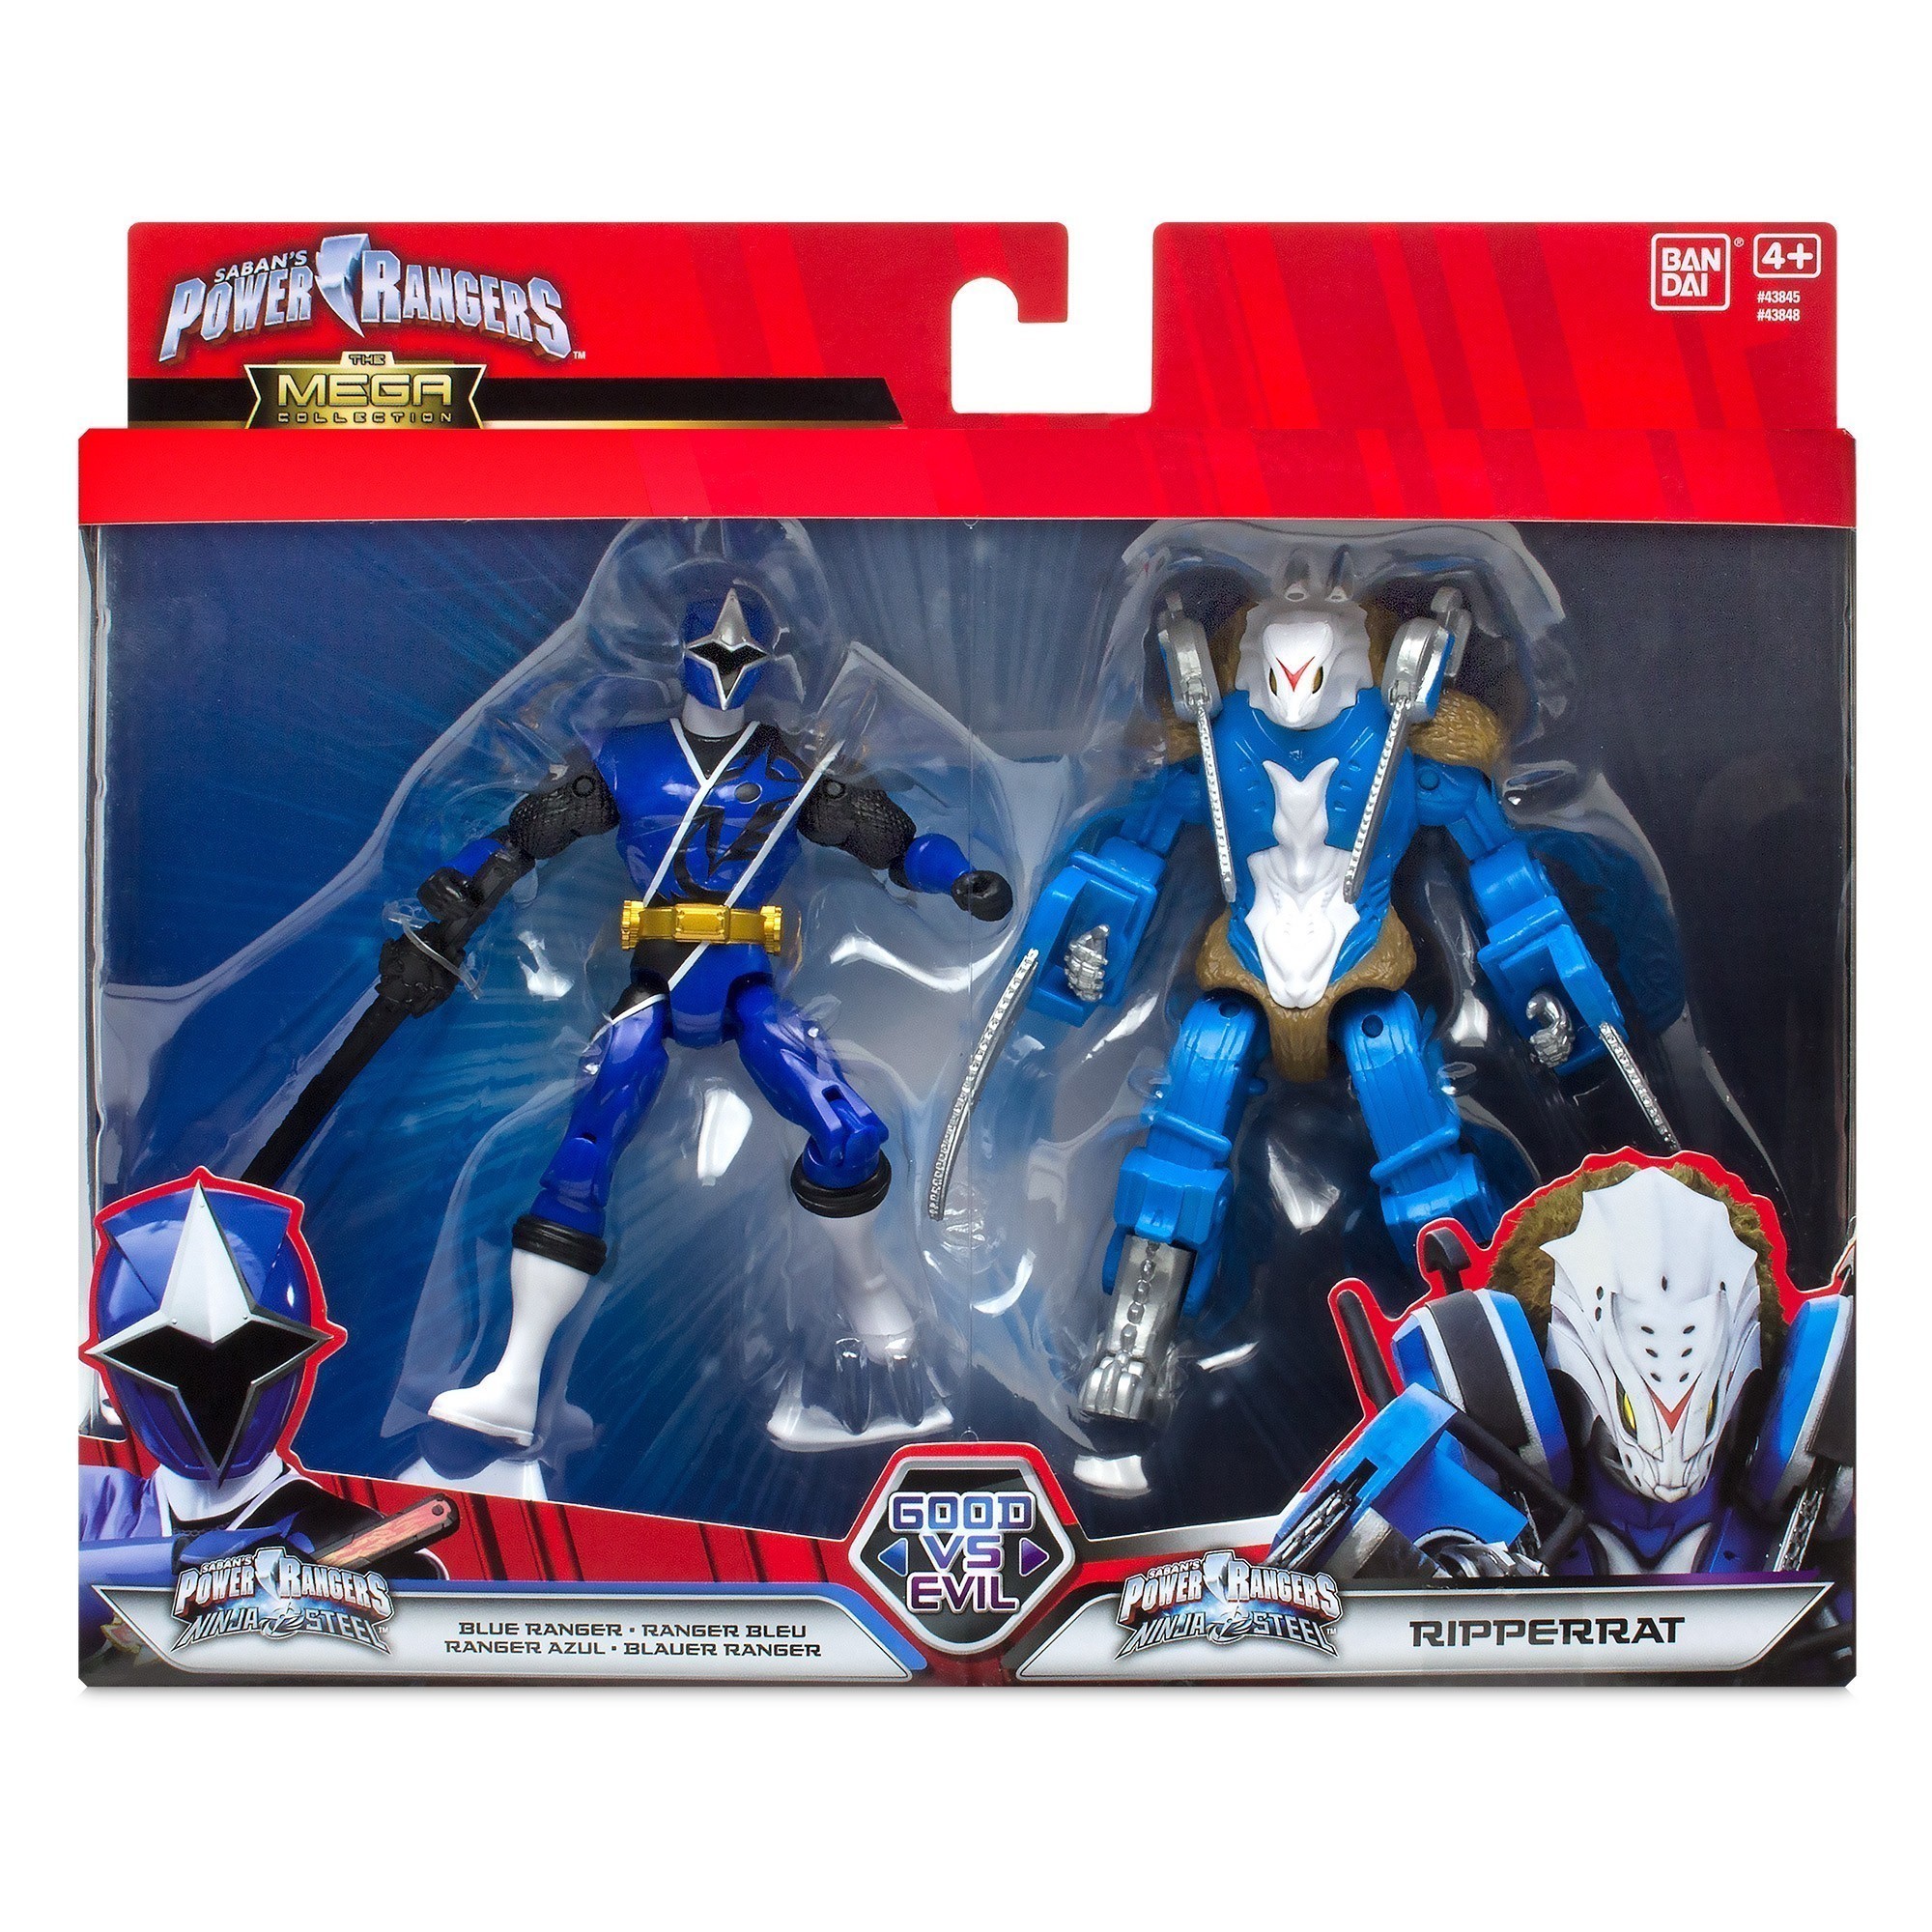 Power Rangers - Ninja Steel - Blue Ranger Vs Ripperrat